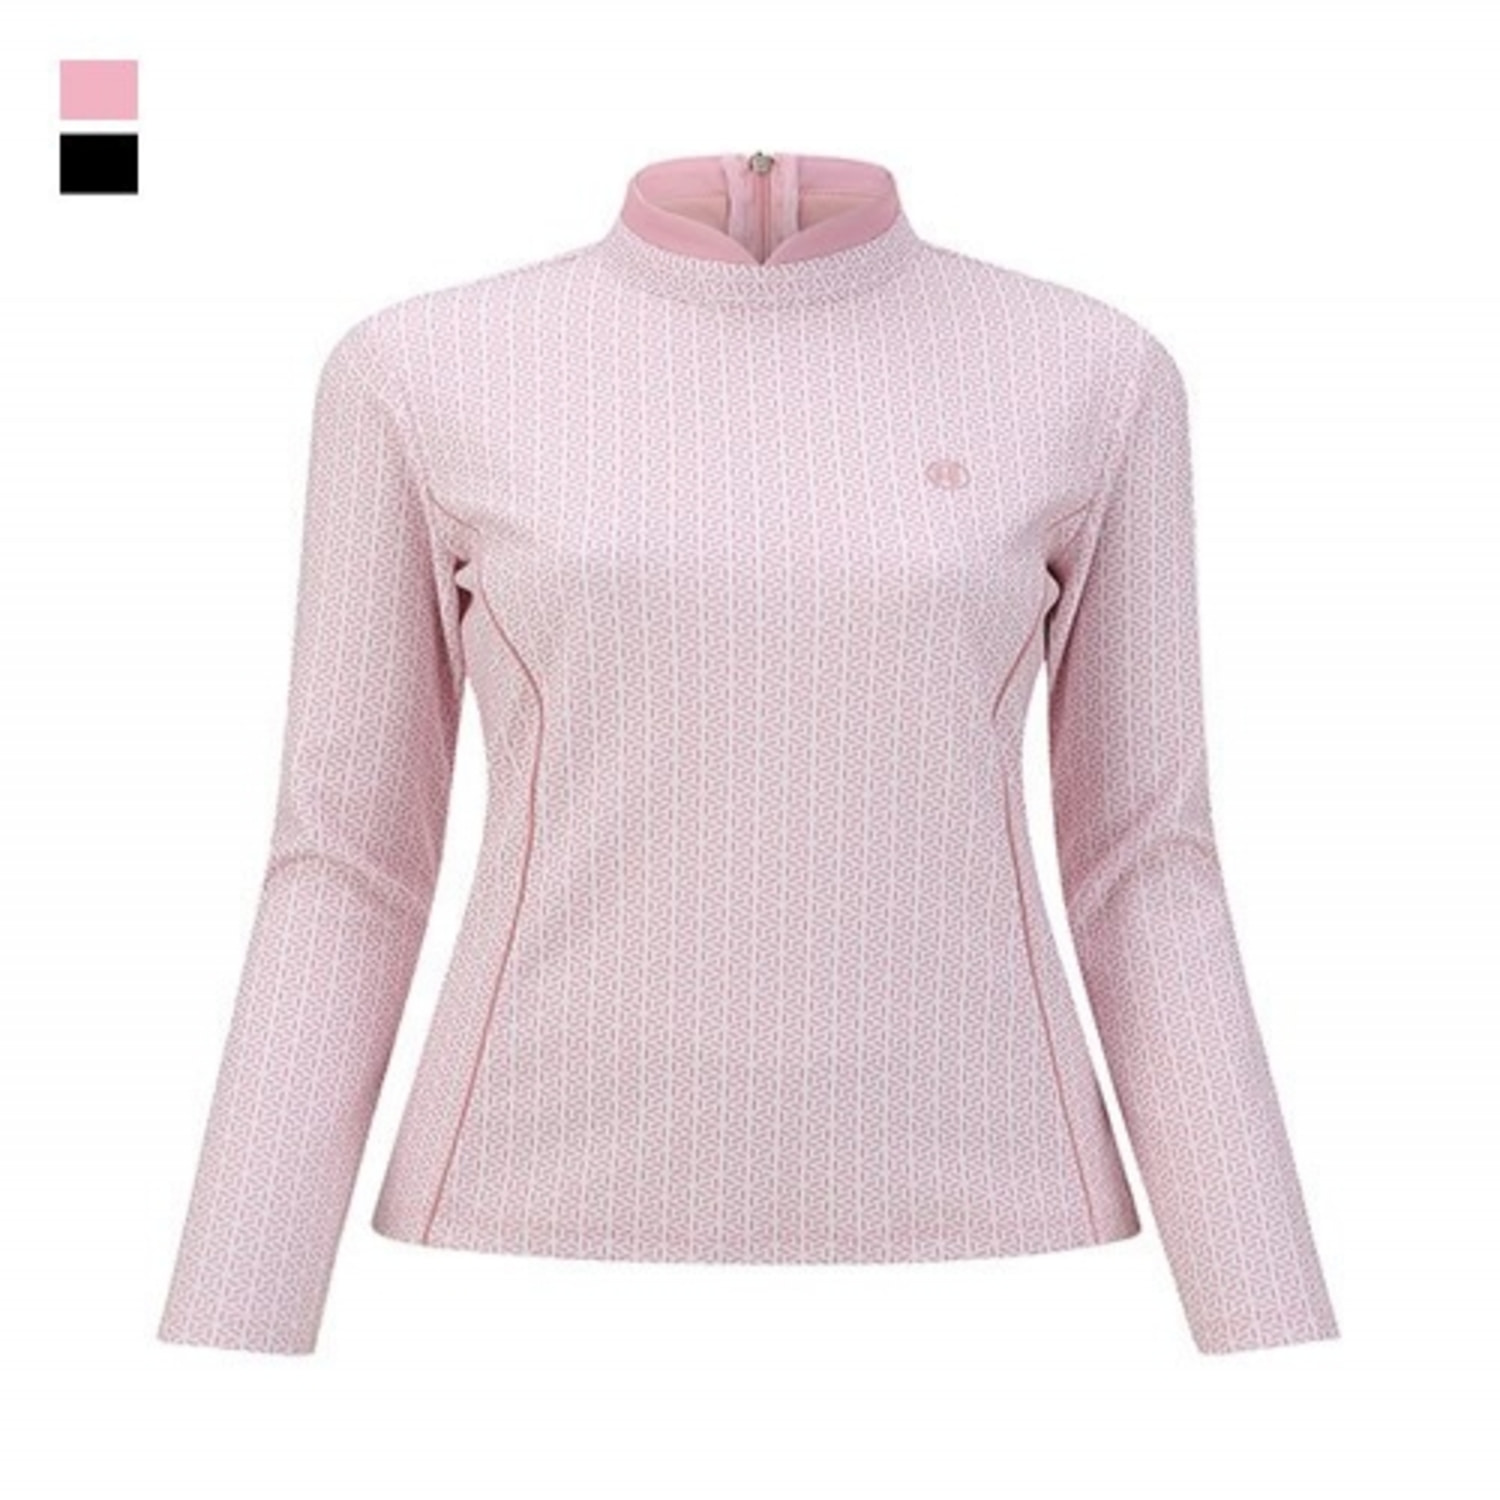 [GSH] 벤제프 여성 전판 스노우패턴 변형카라티셔츠 Light Pink BL5QWTS801